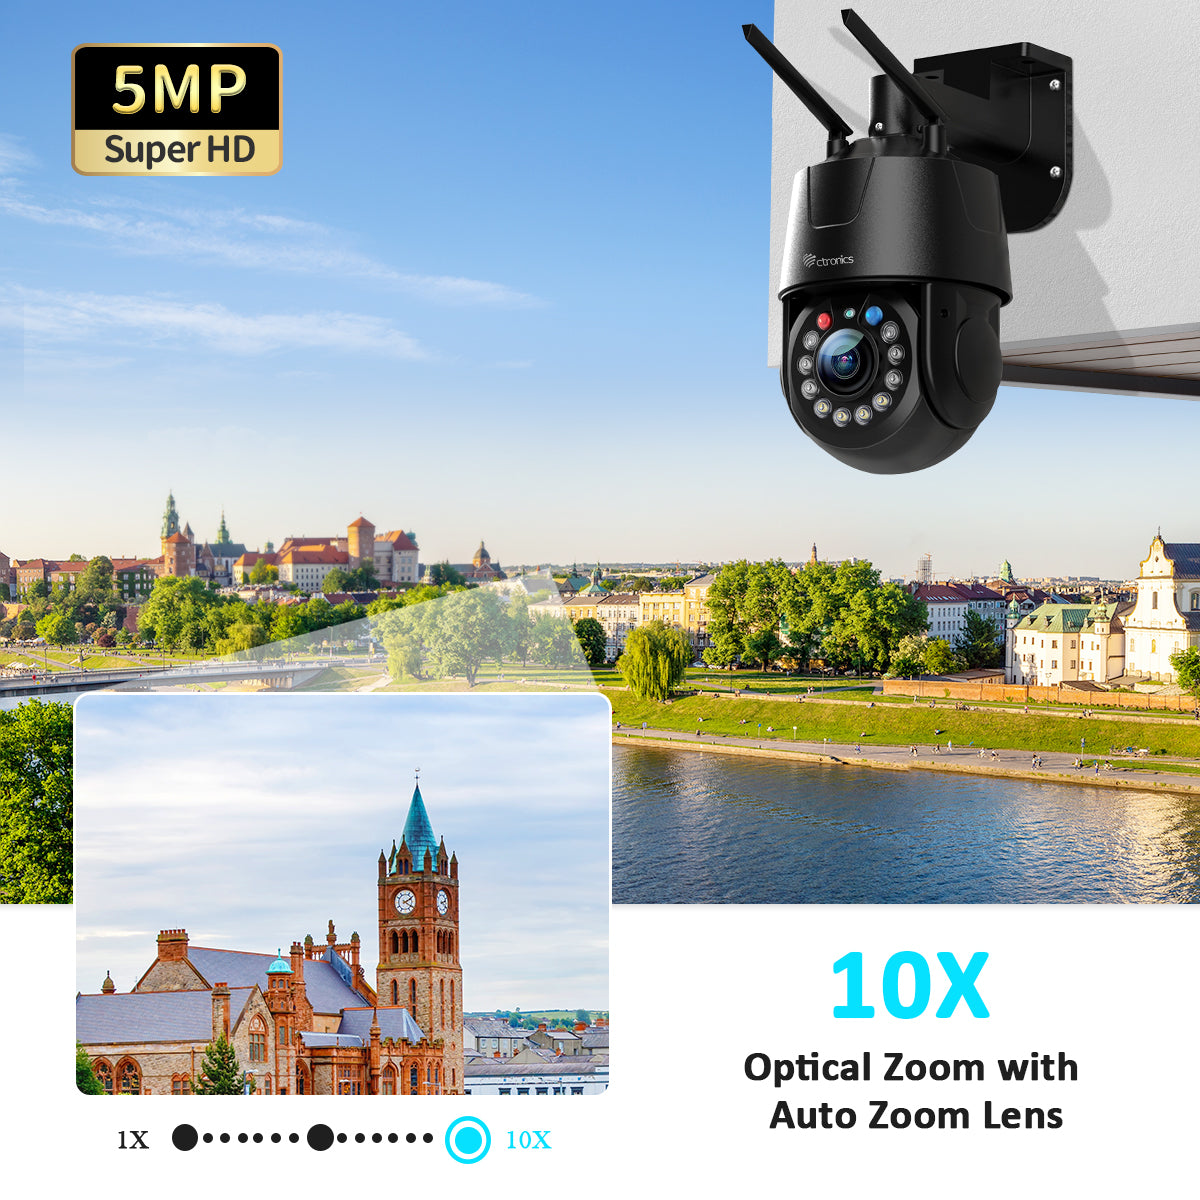 10x Optical Zoom 5MP Ctronics Caméra Surveillance WiFi Extérieure  Suivi Auto avec Zoom e Croisière Détection Humaine